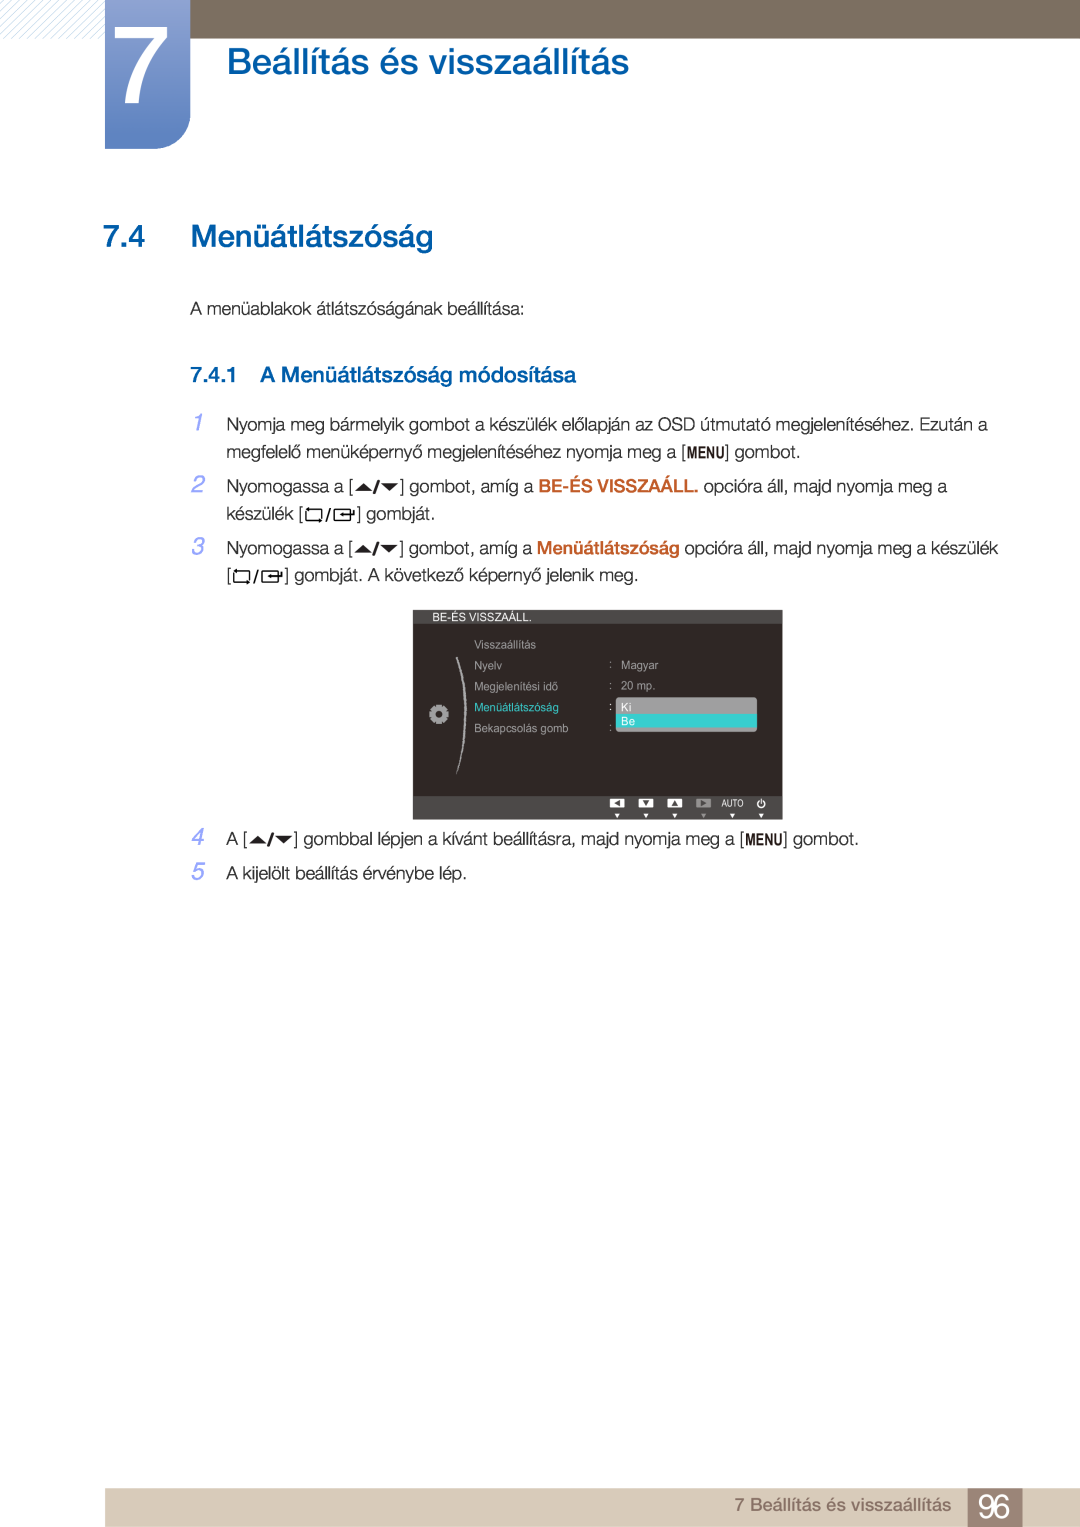 Samsung LF22FN1PFBZXEN manual 7.4 Menüátlátszóság, A Menüátlátszóság módosítása, 7 Beállítás és visszaállítás 